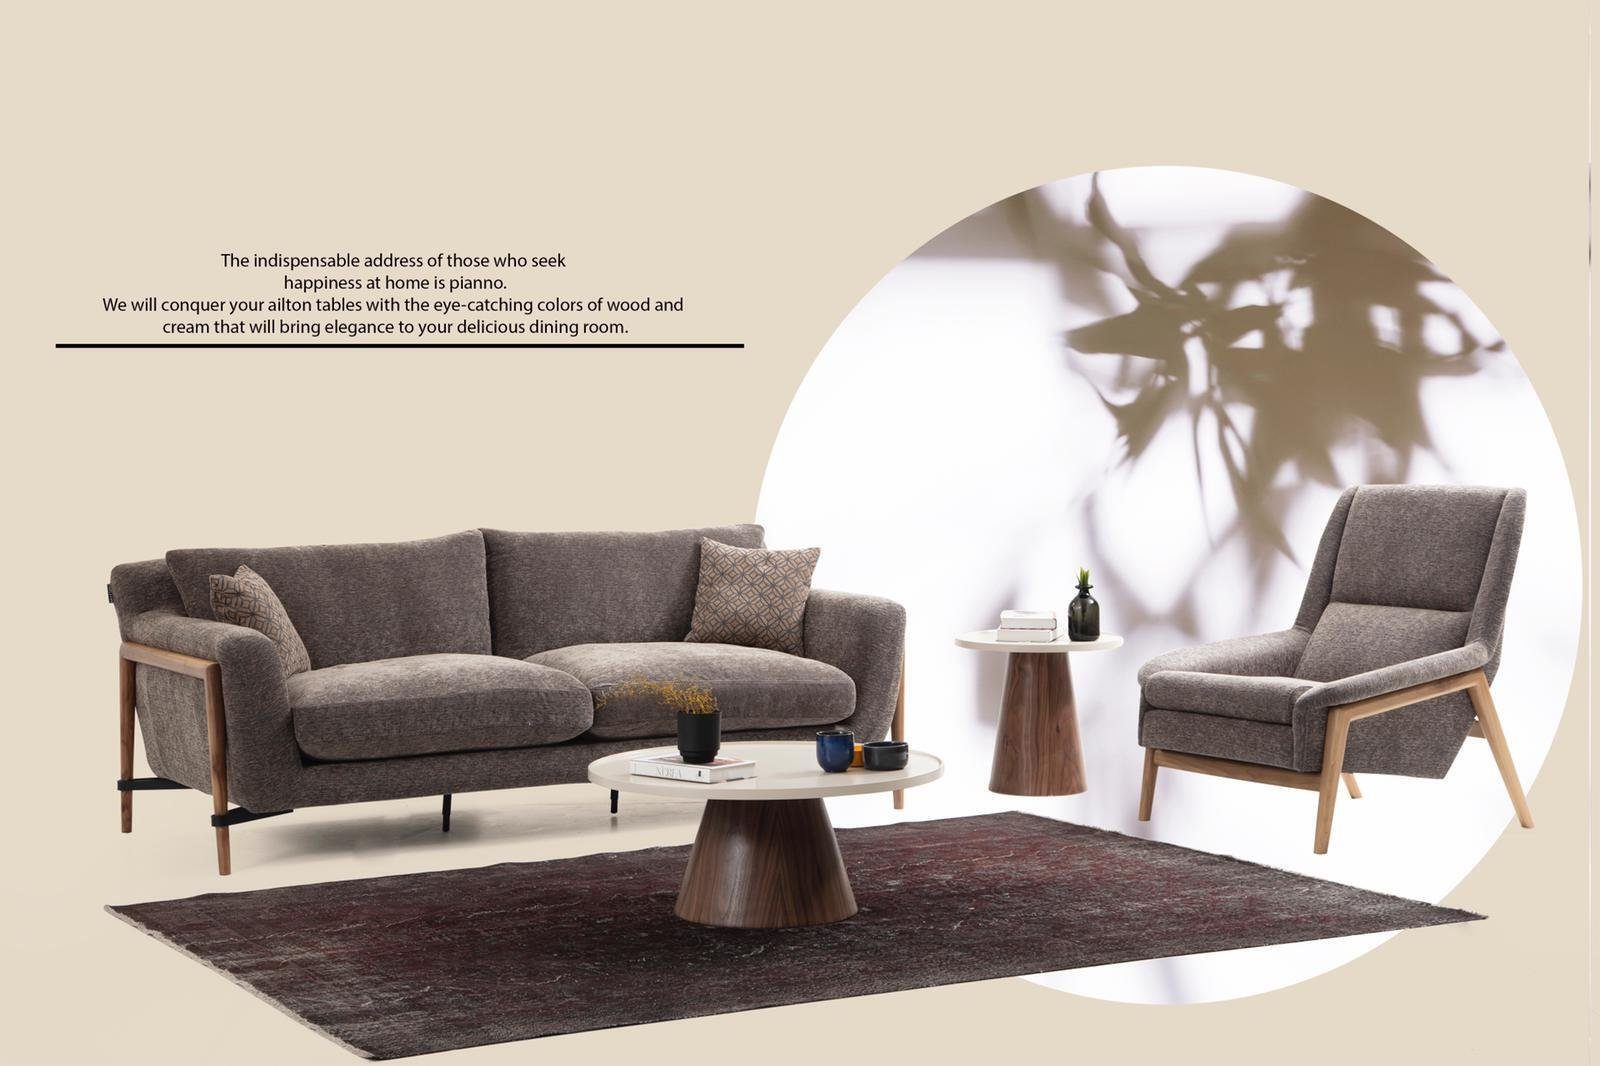 Design Sofas 1 4 in Teile, 4-Sitzer Wohnzimmer Made Sofa Viersitzer Modern Sitzer JVmoebel Grau, Europa Stoff